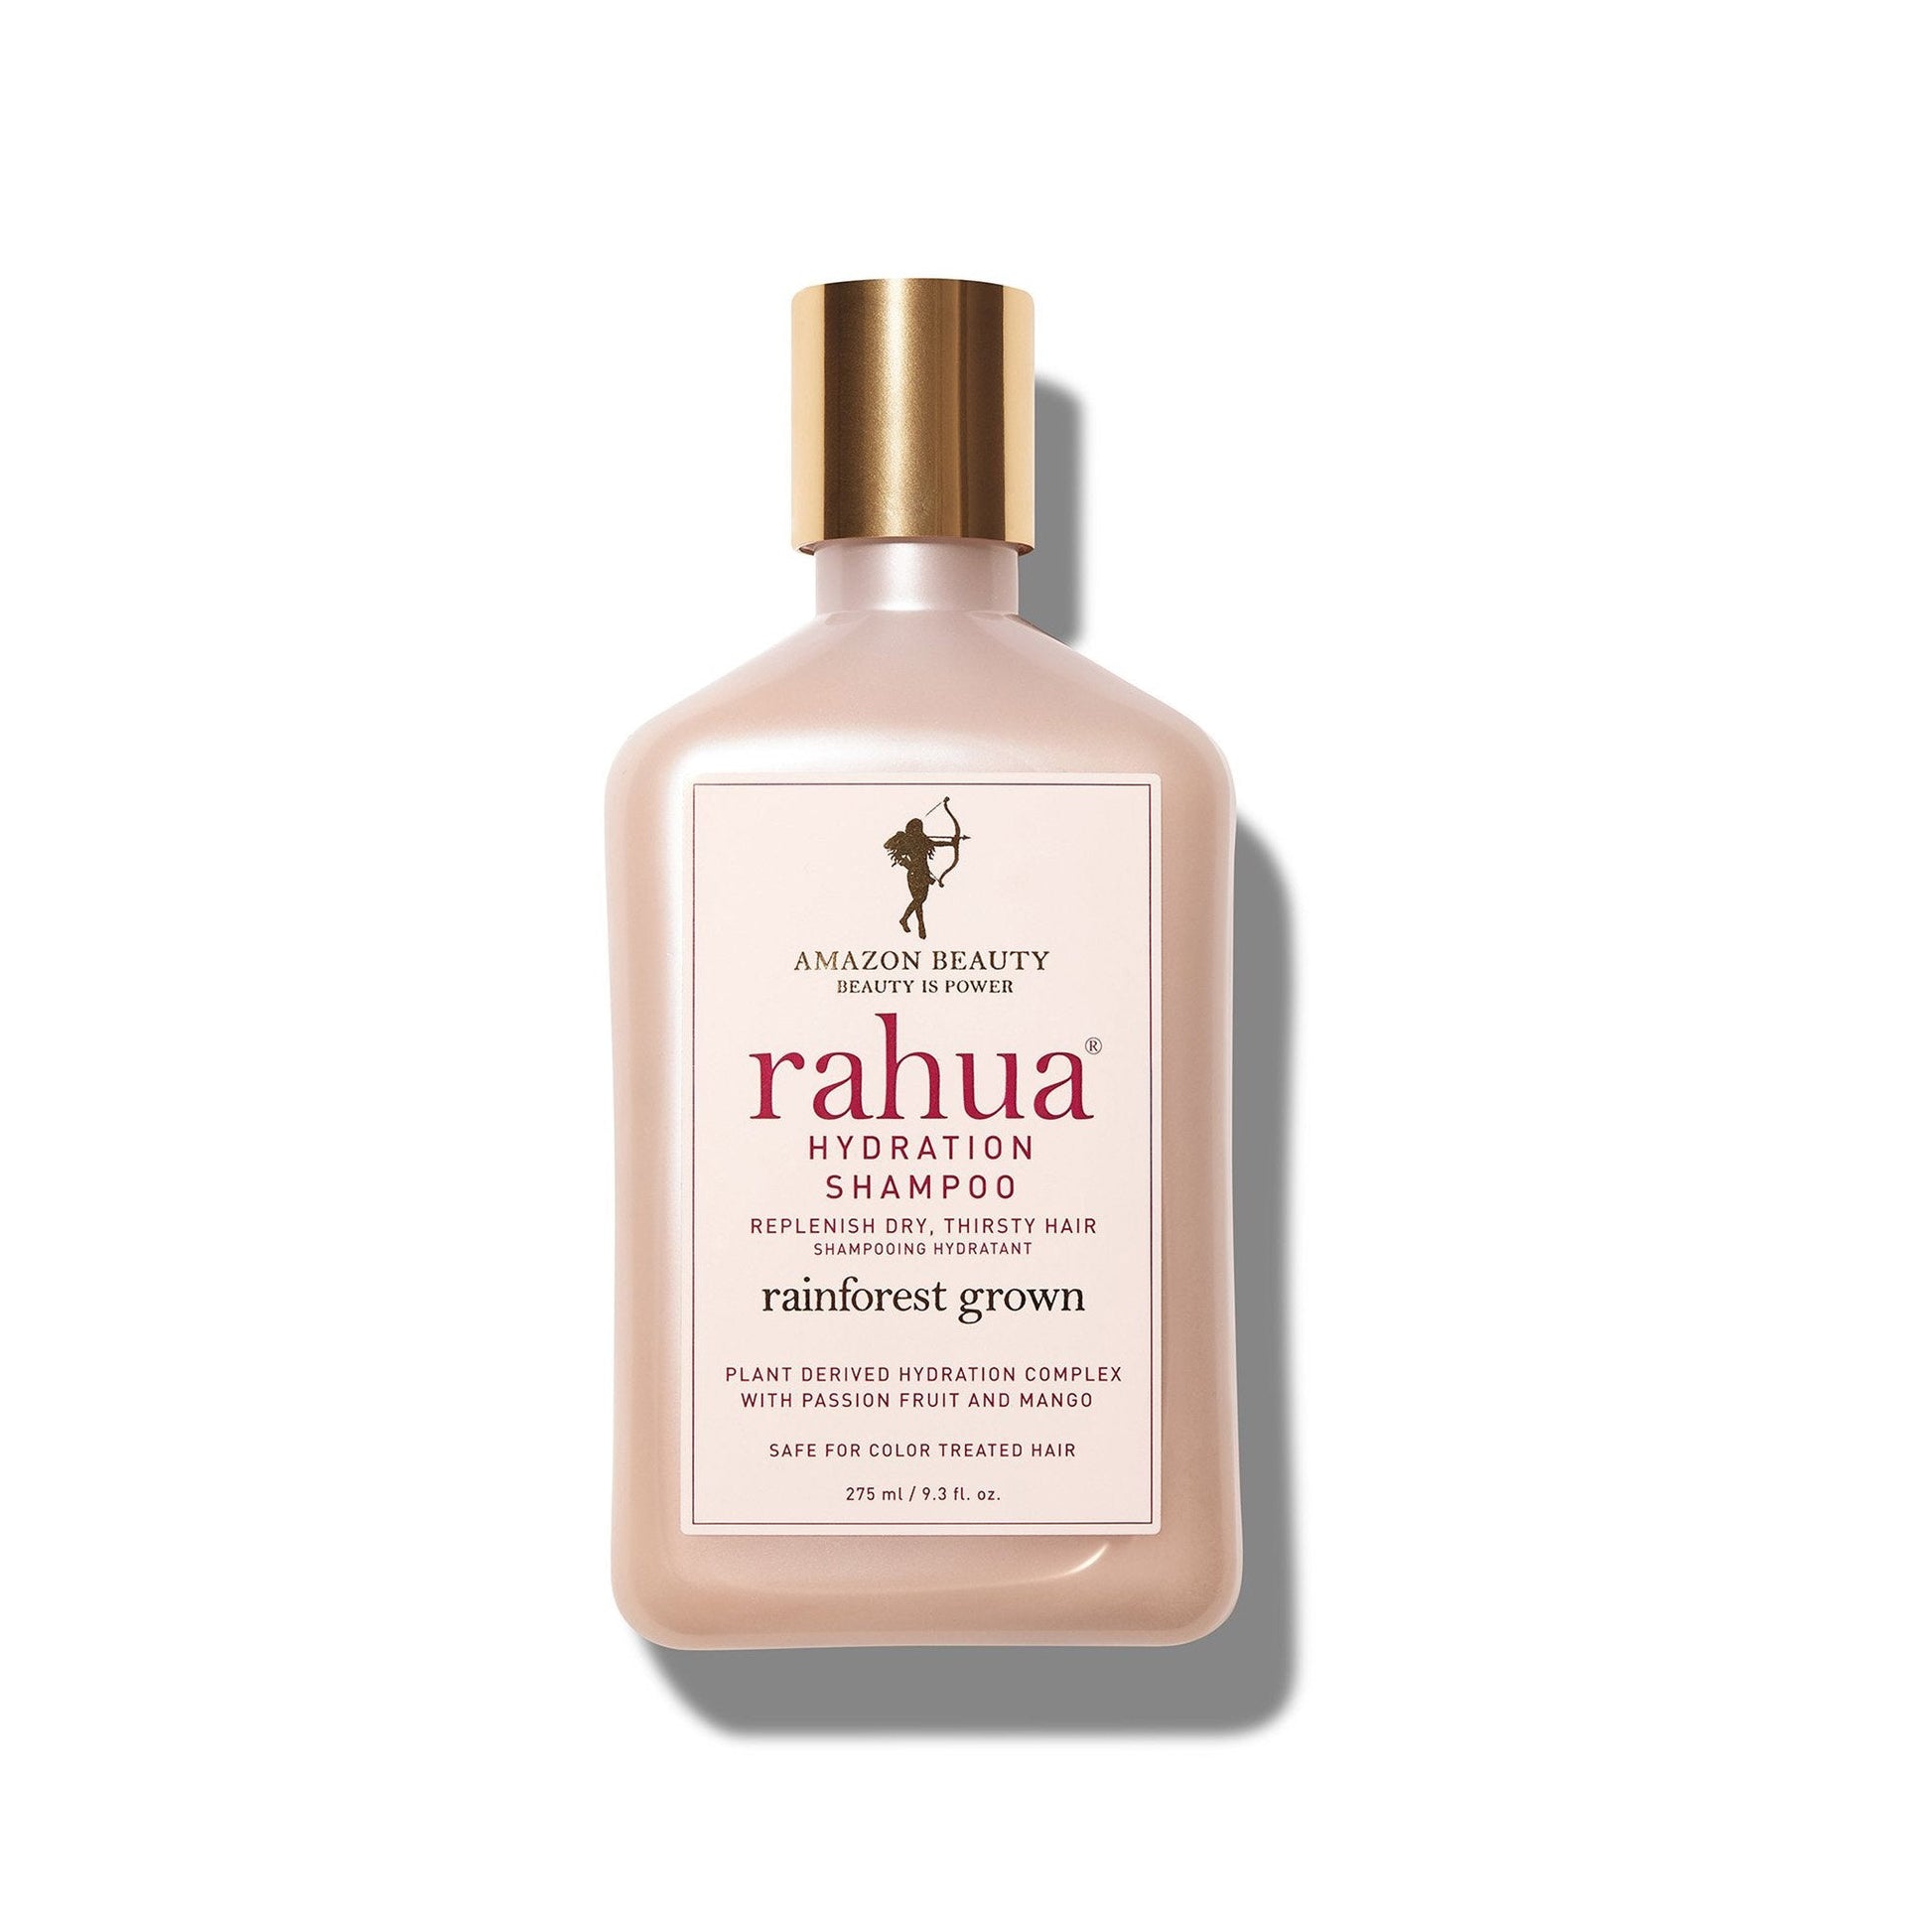 rahua hydration shampoo Full size